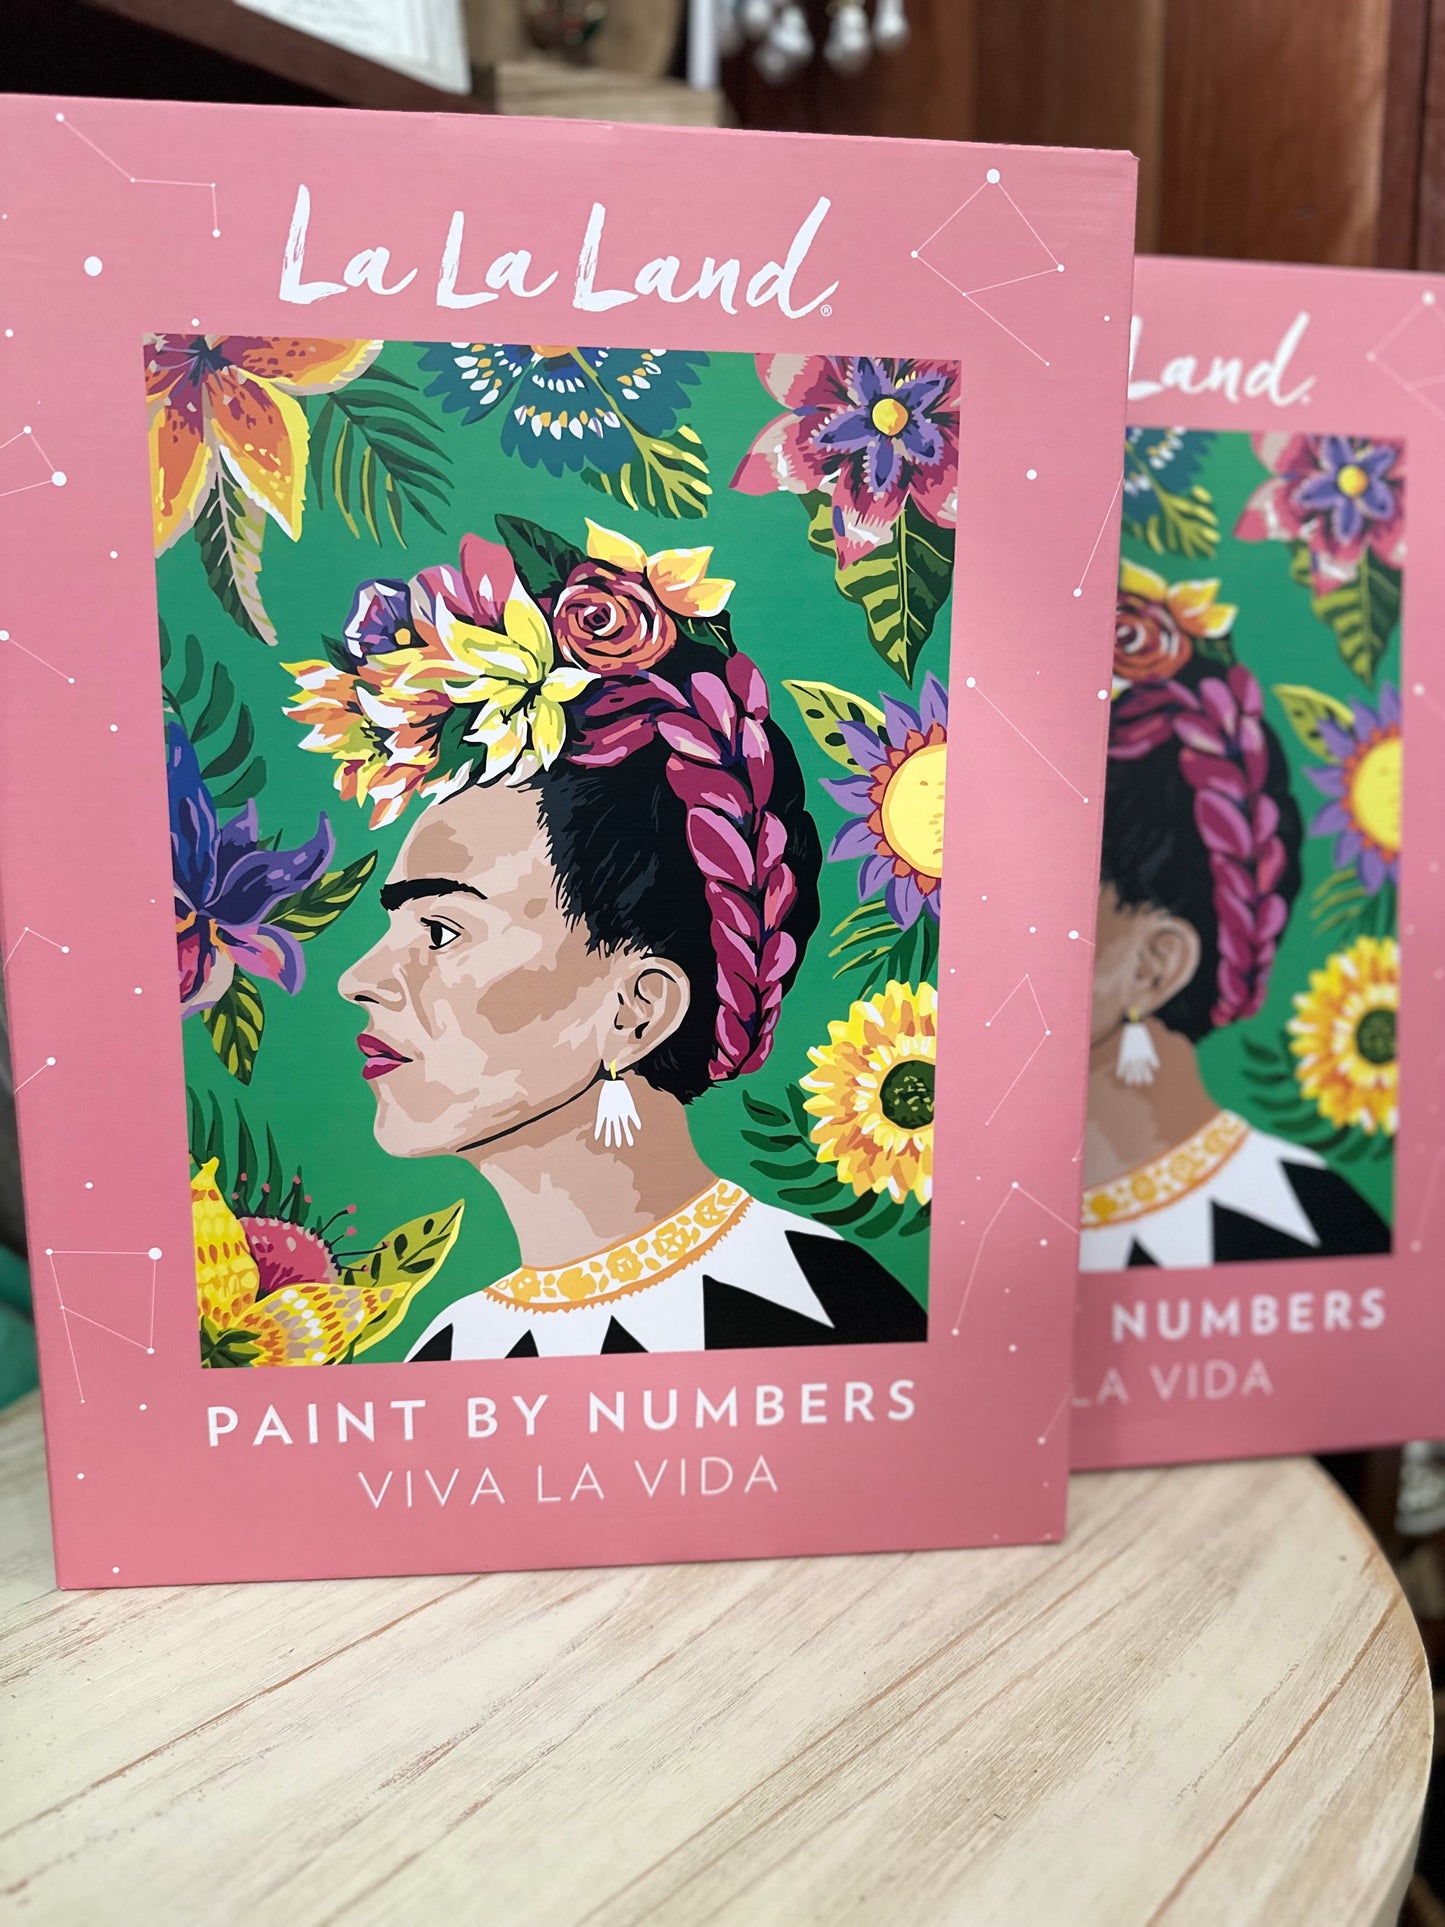 La La Land - Paint by numbers